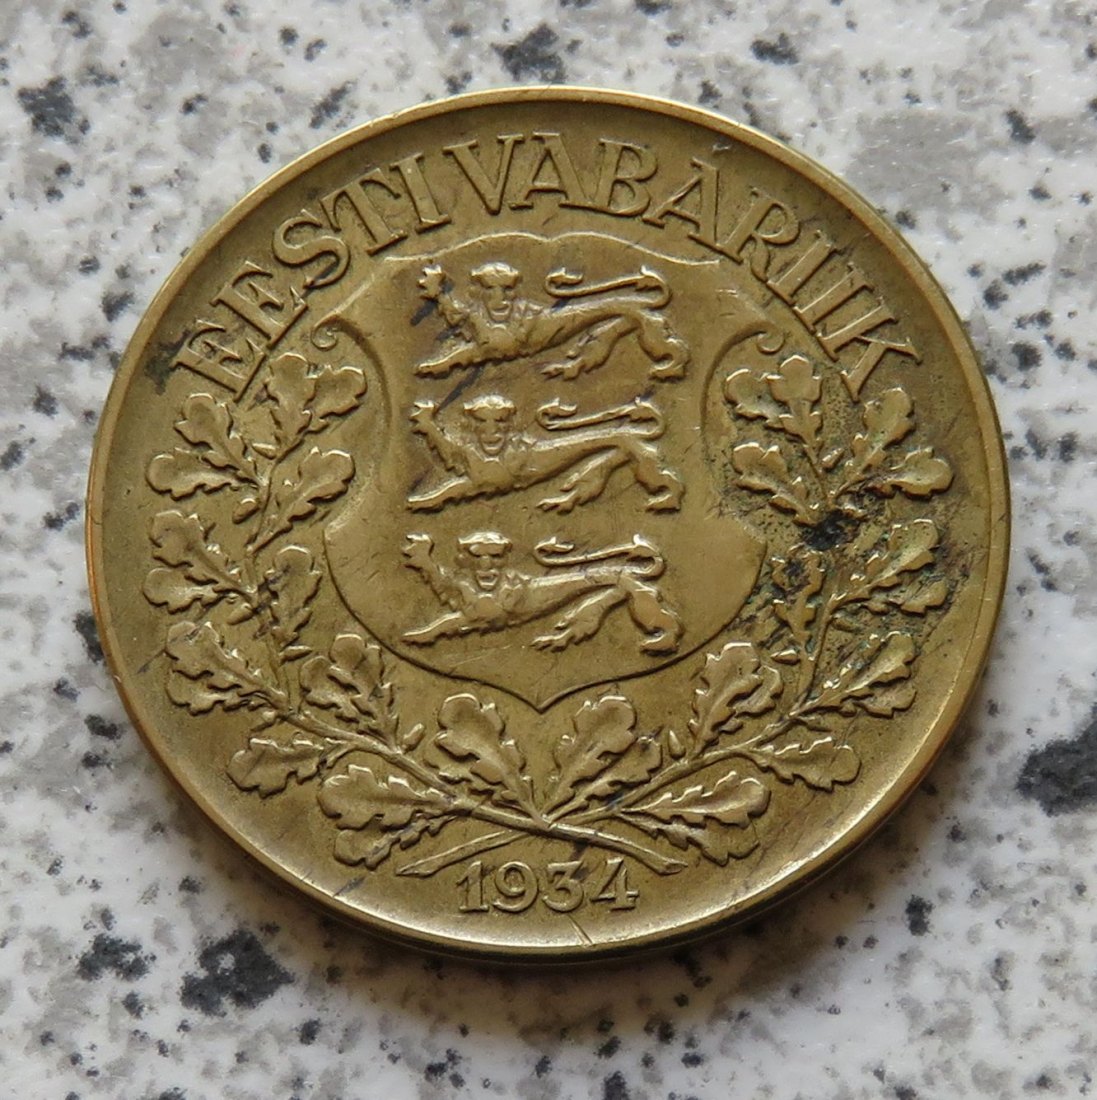  Estland 1 Kroon 1934   